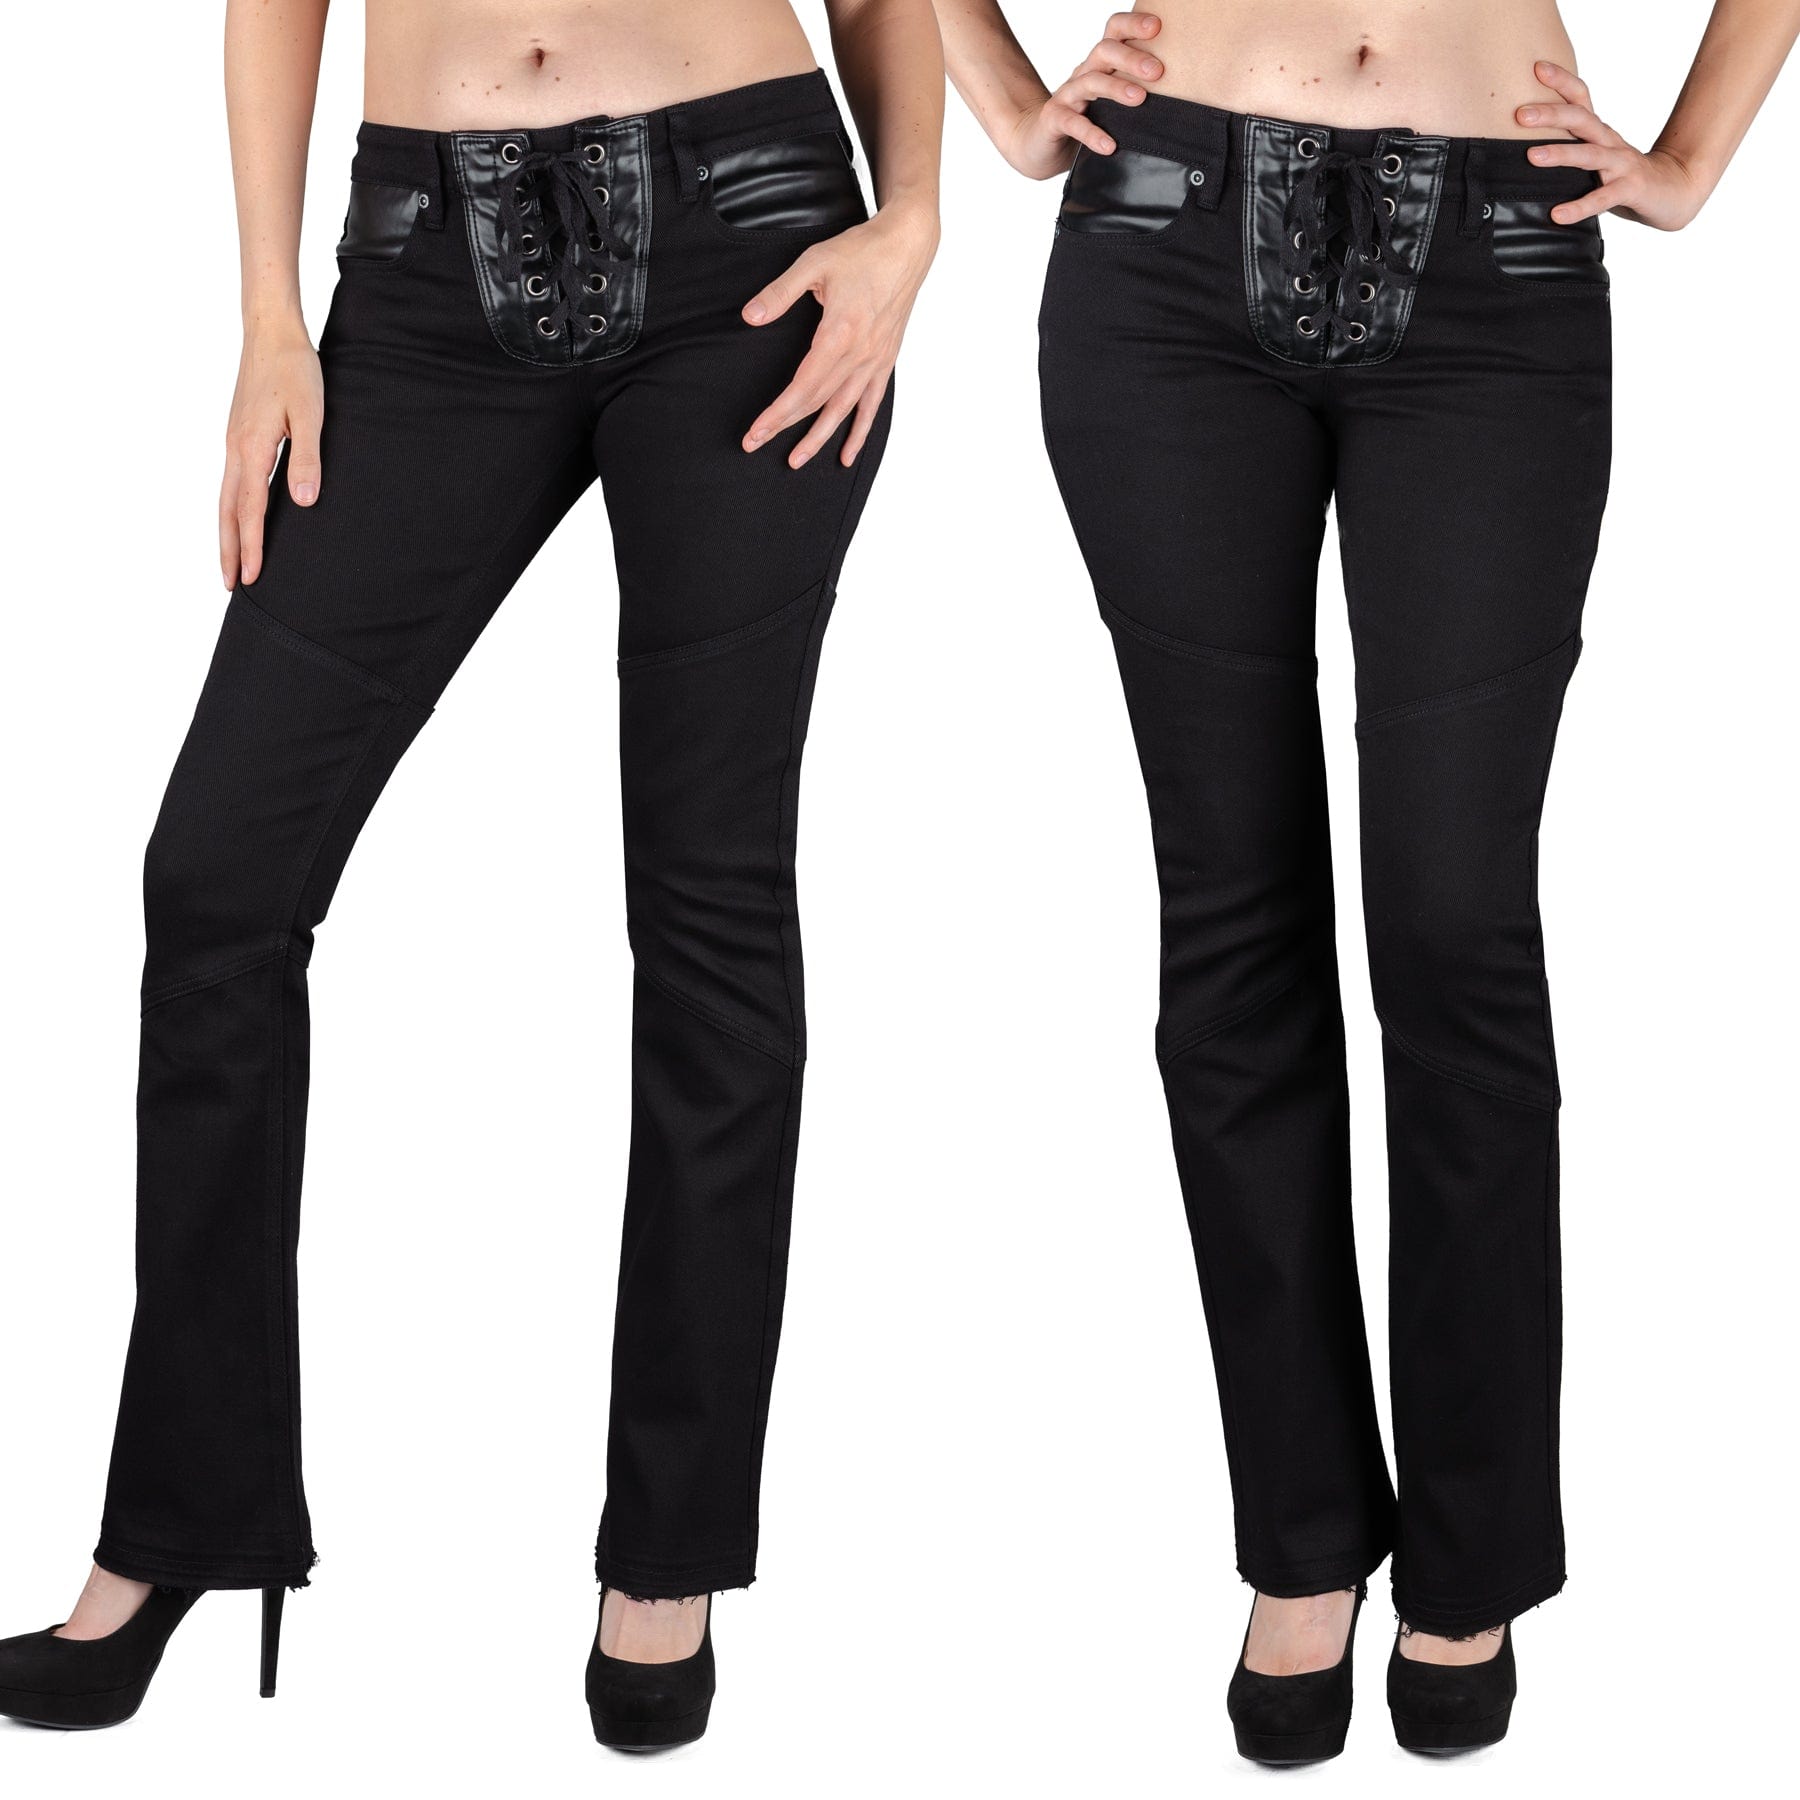 Wornstar Clothing Unisex Jeans. Troubadour Denim Jeans - Black